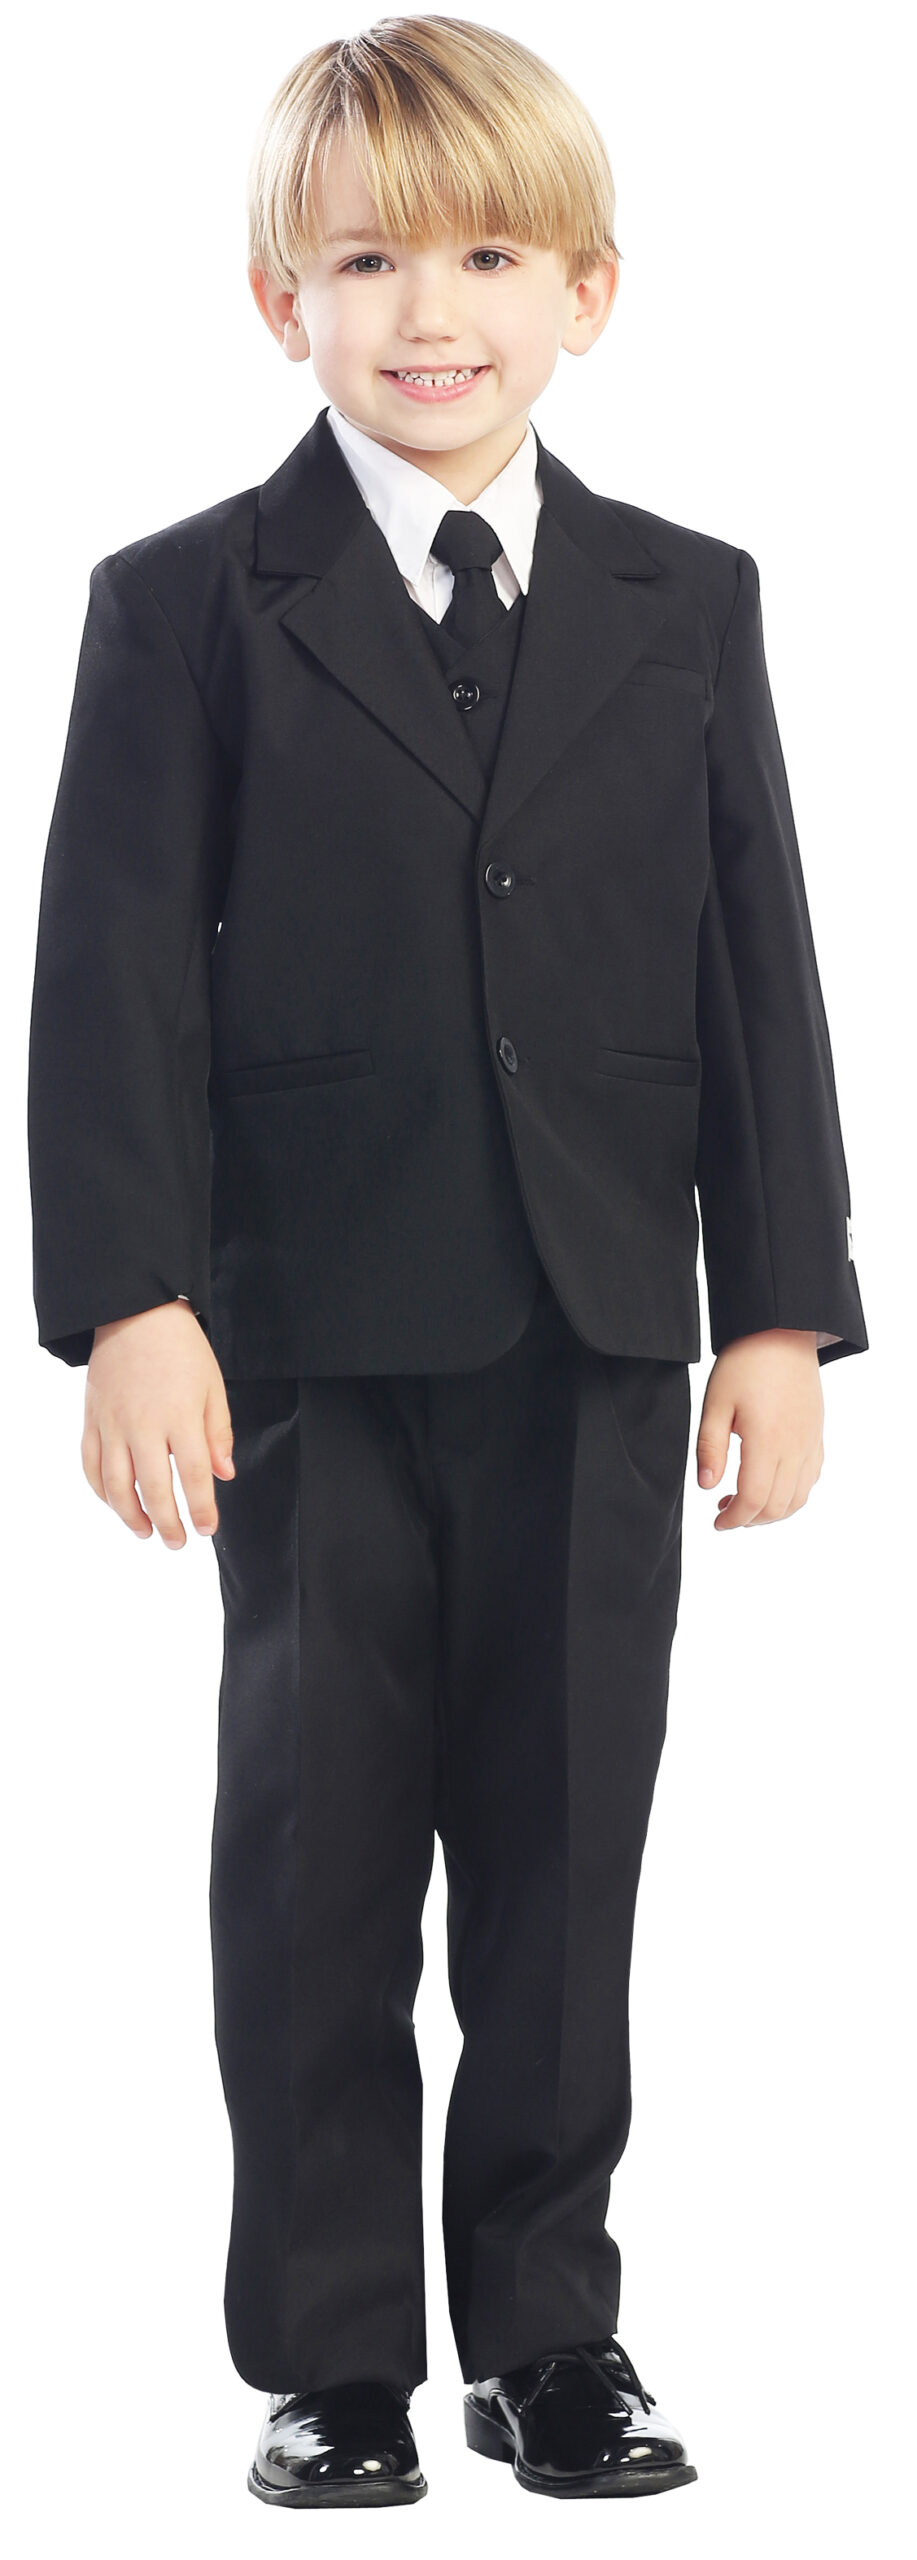 Avery Hill 5-Piece Boy's 2-Button Dress Suit Full-Back Vest - Black XL (18 - 24 Months)